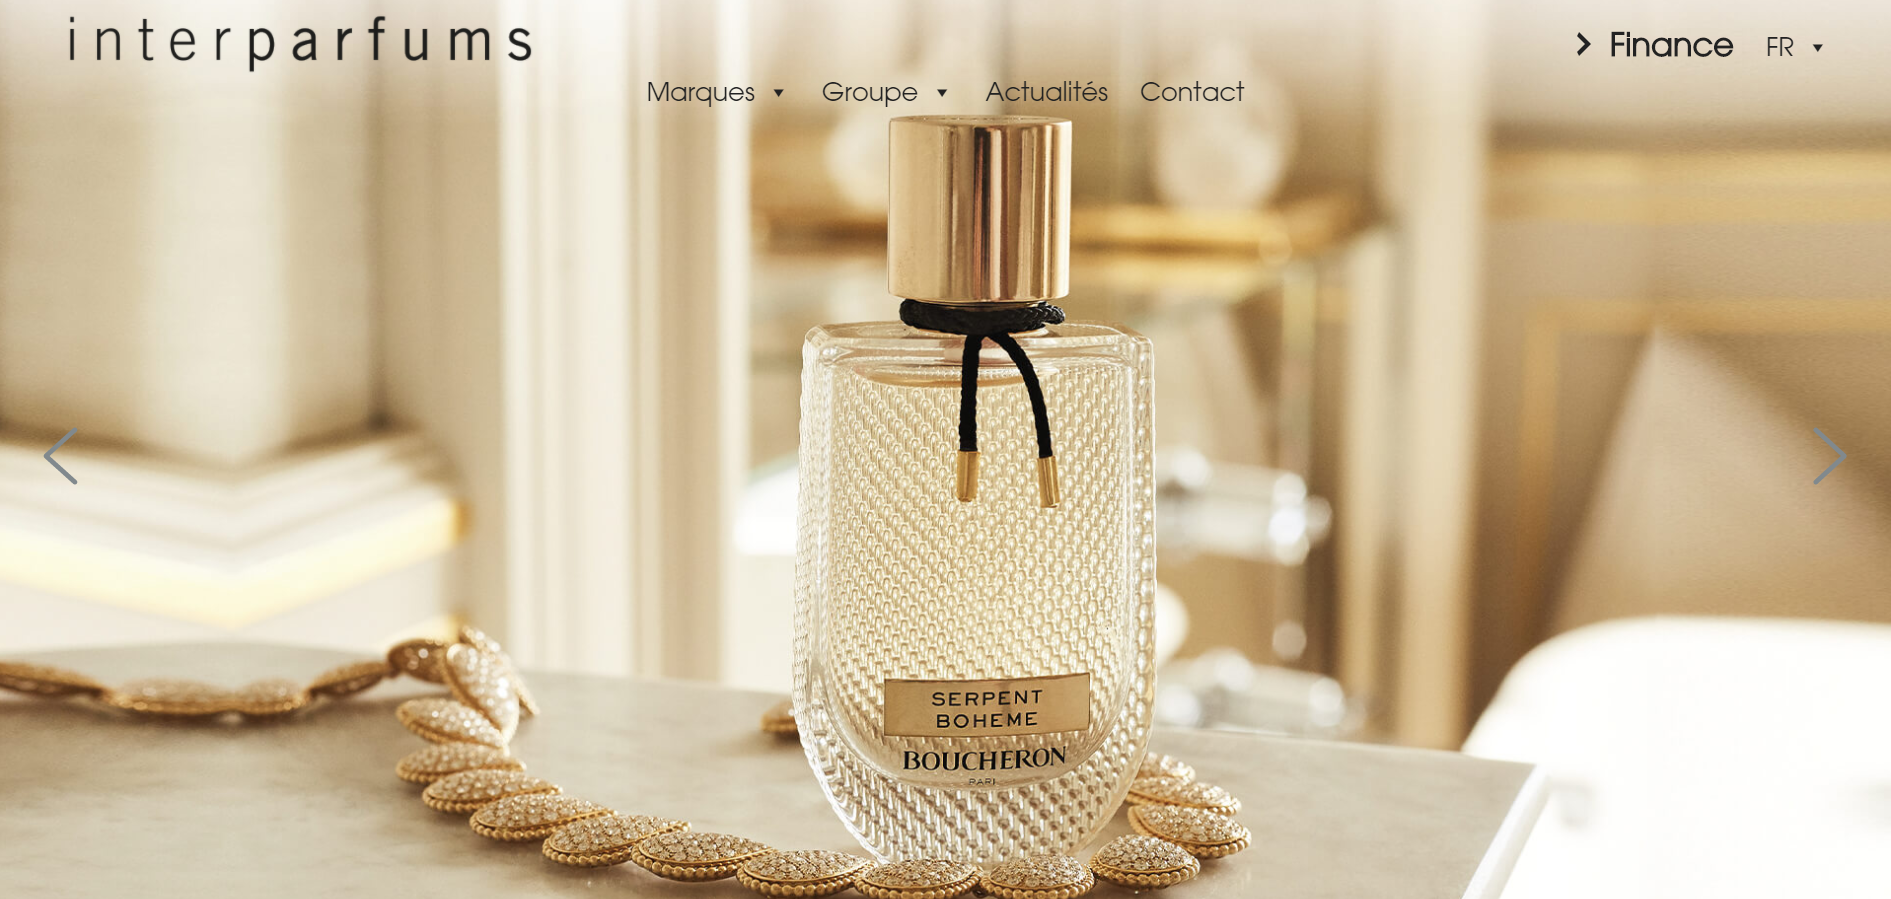 法国香水生产巨头Interparfums 预期2020年销售额为3.4亿欧元